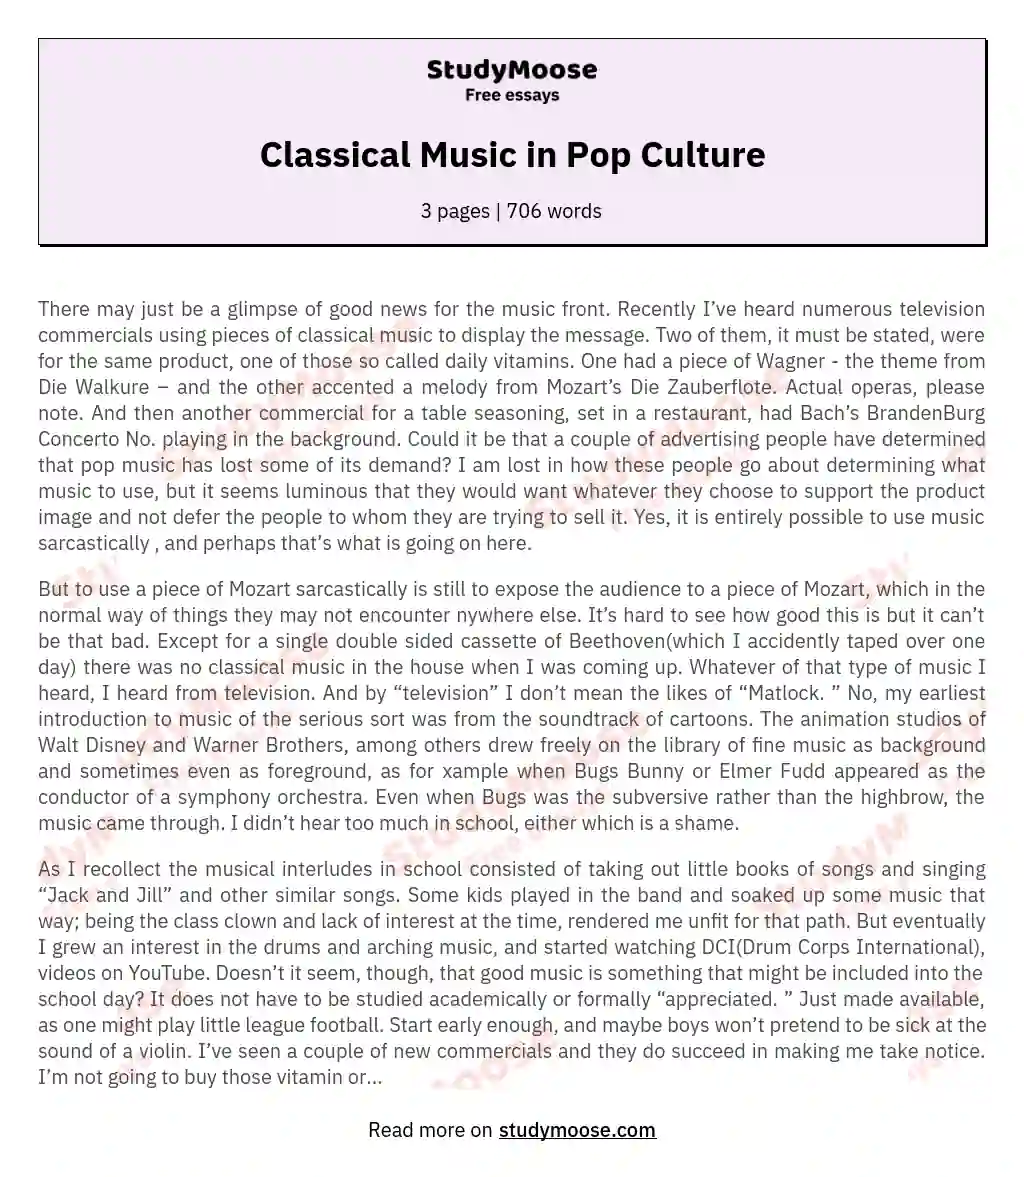 Classical Music in Pop Culture